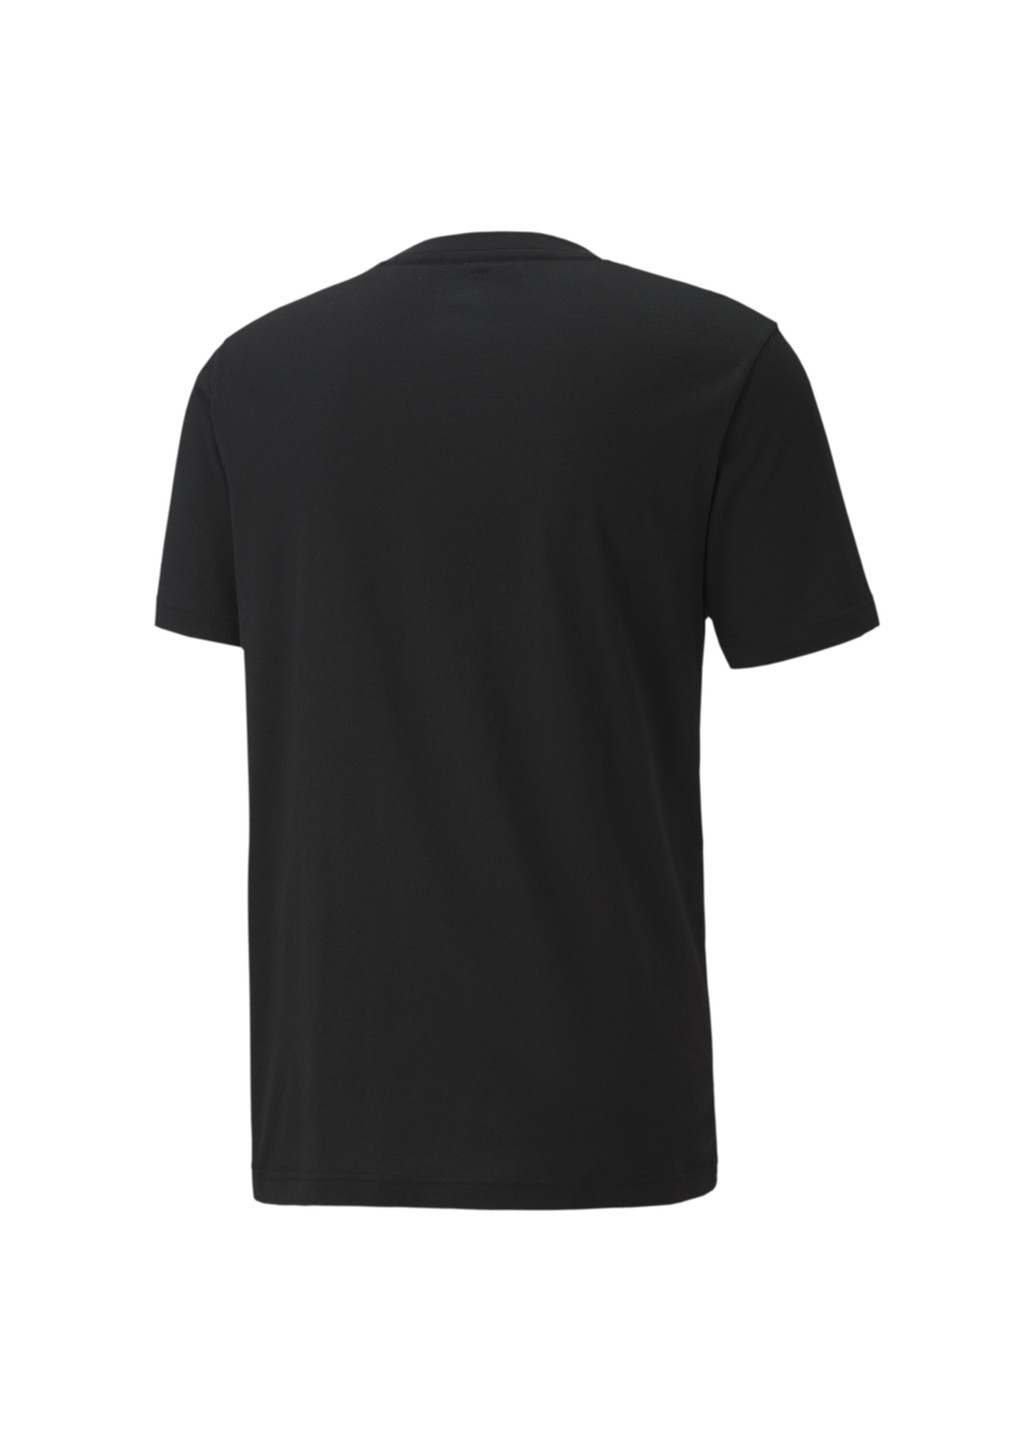 Черная демисезонная футболка mapm logo tee Puma